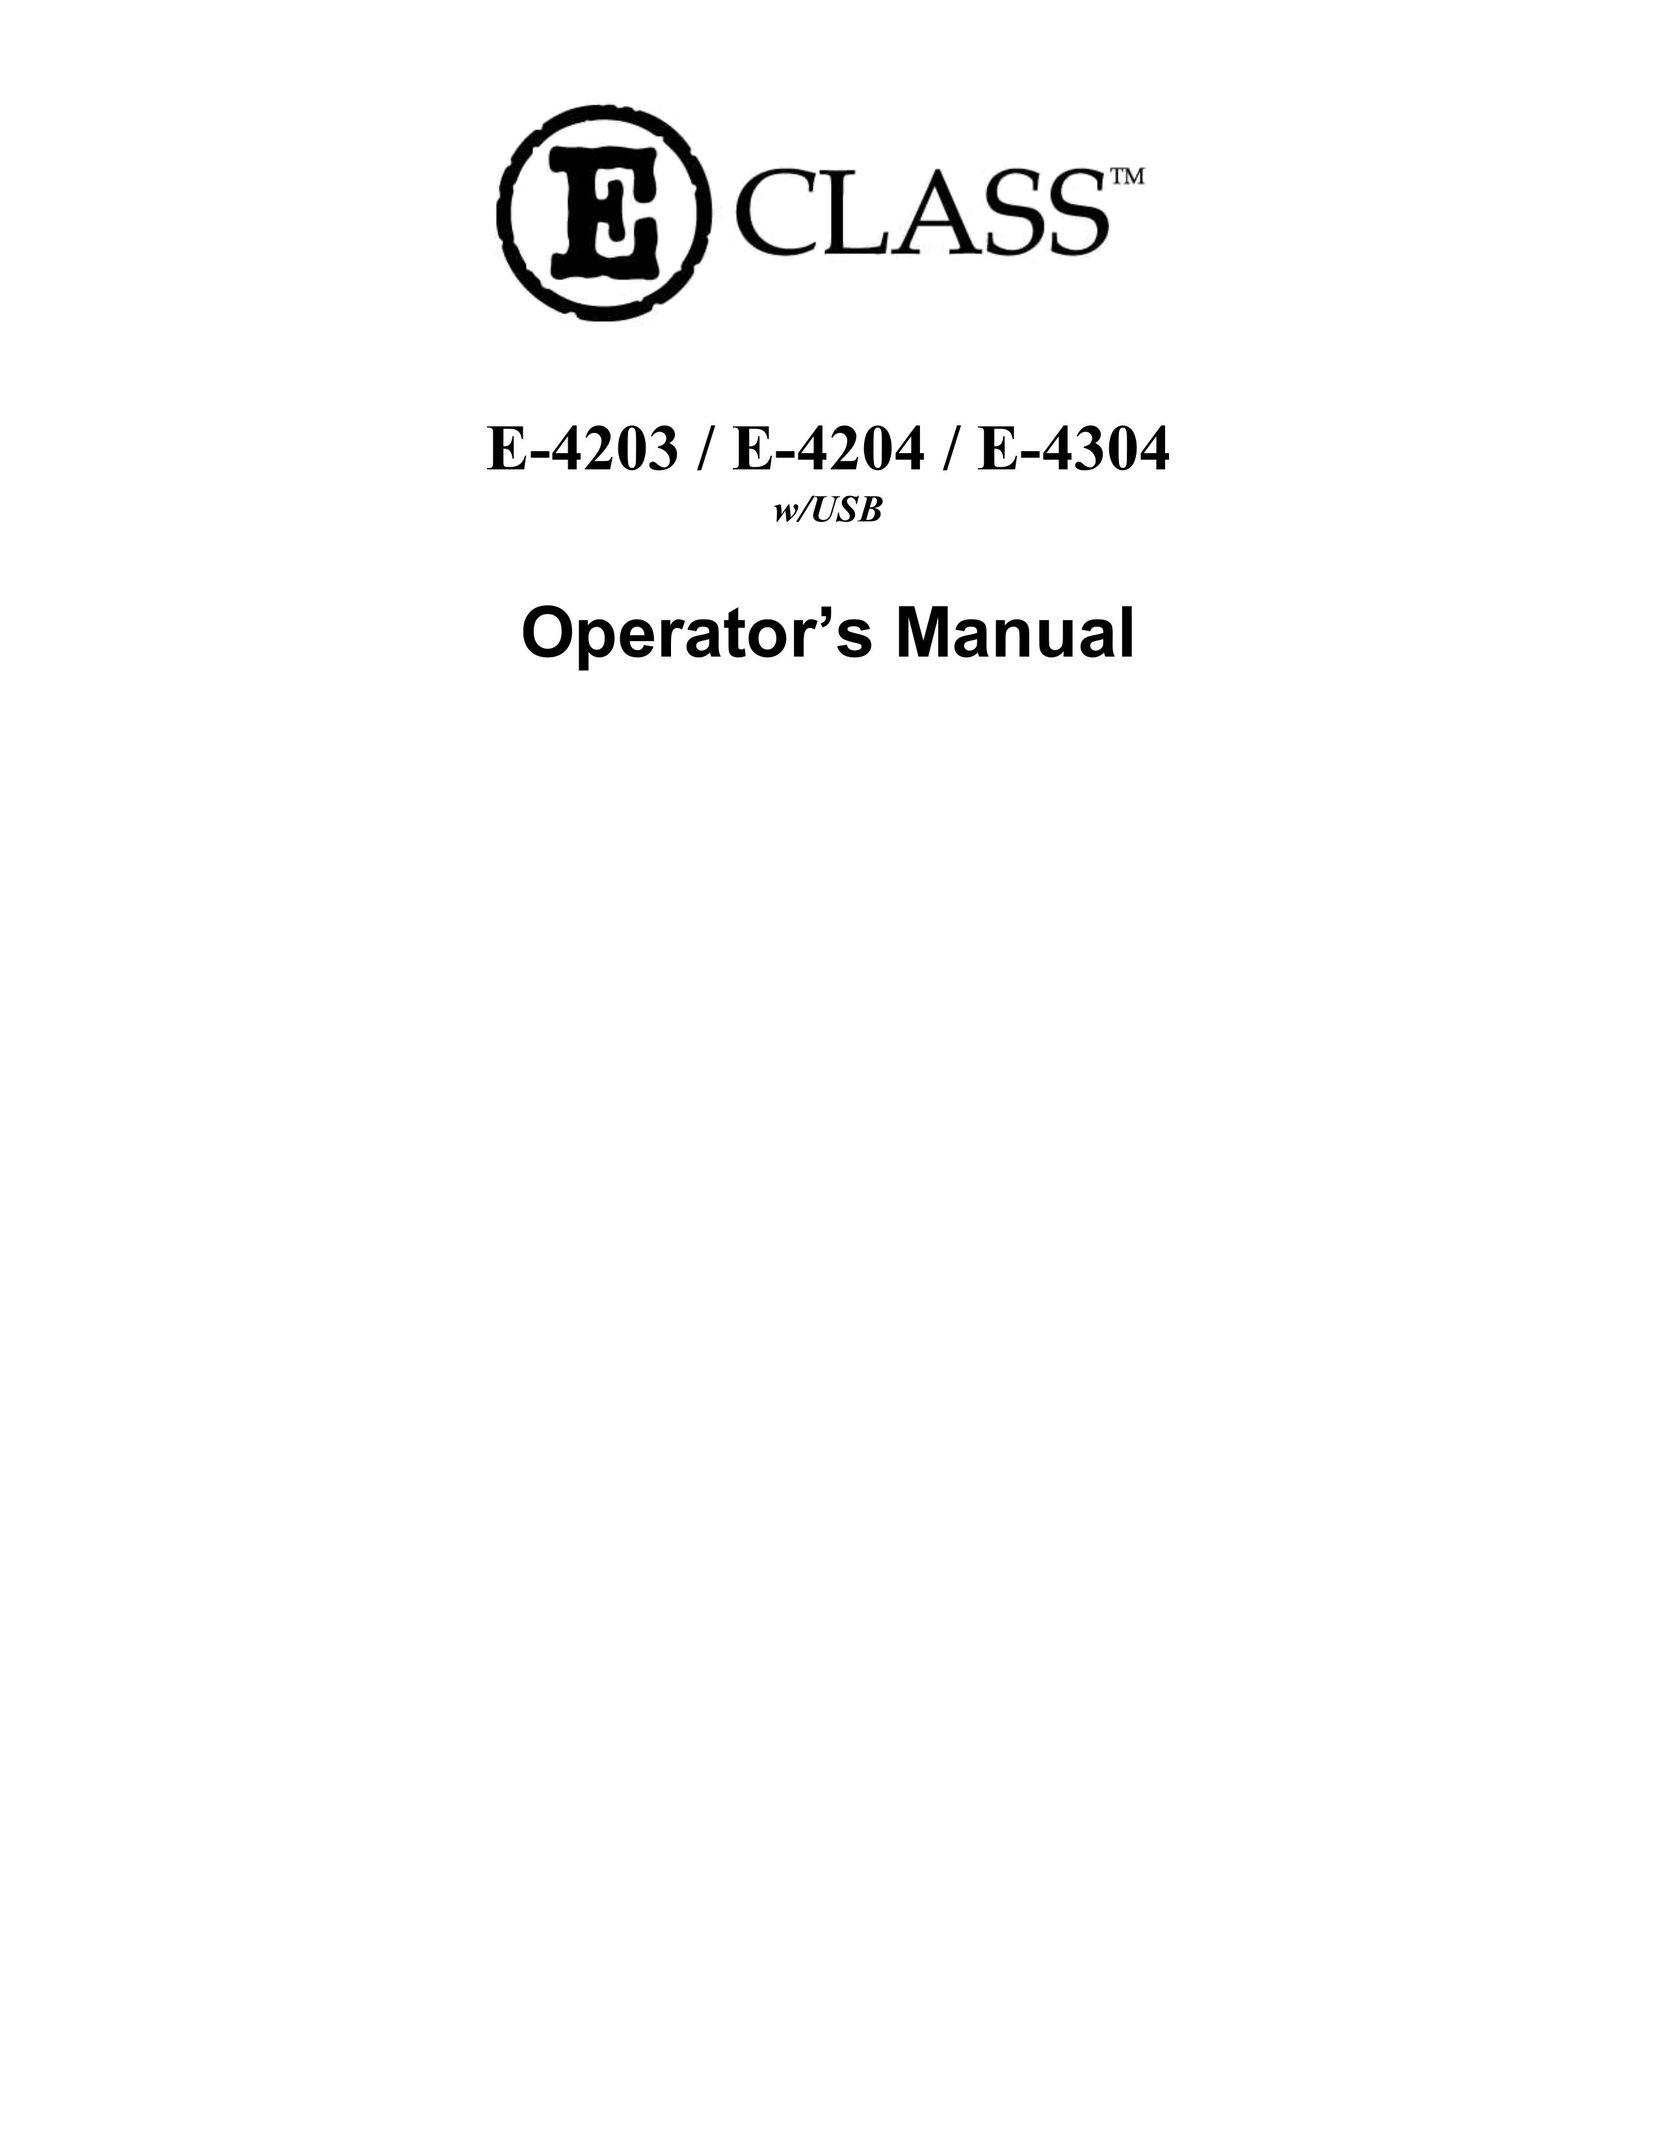 Datamax E-4204 Printer User Manual